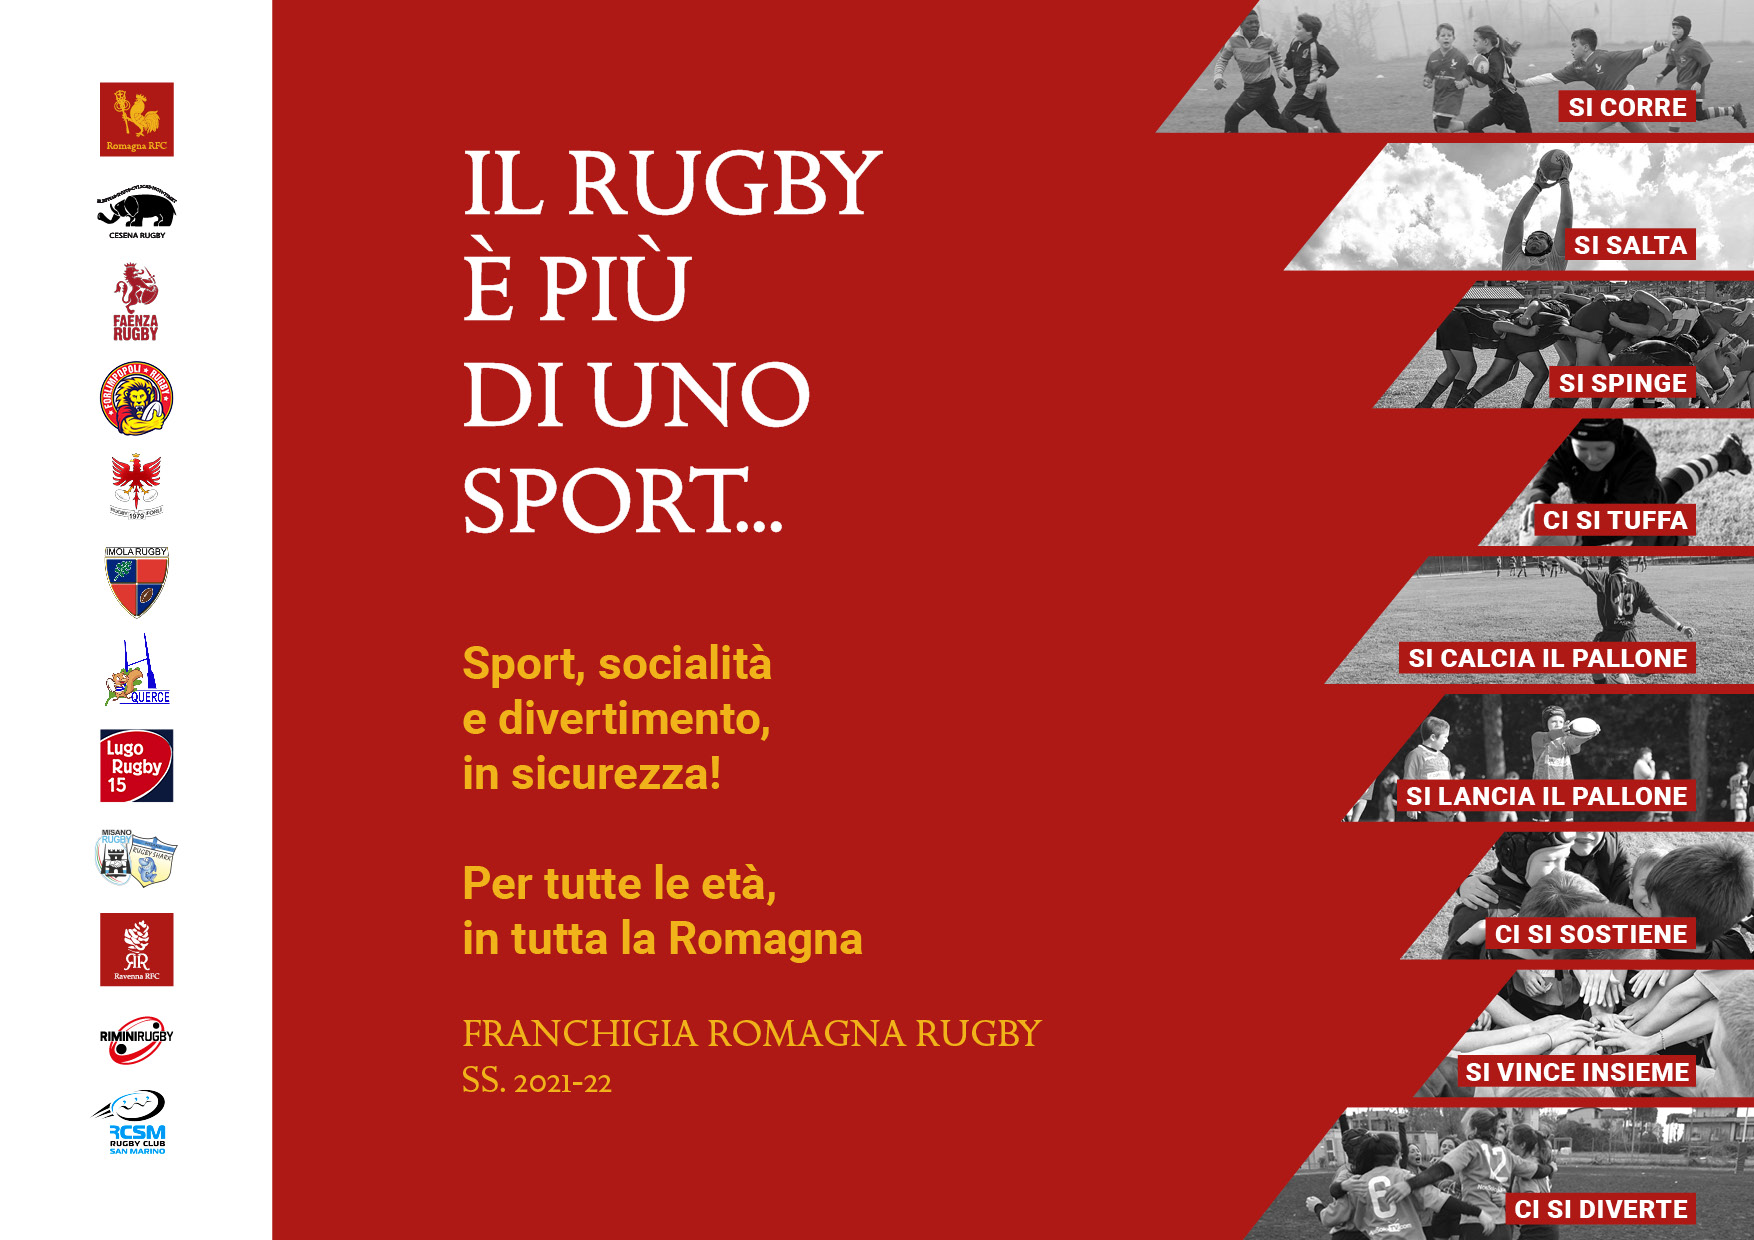 Inizia la nuova stagione della Franchigia Romagna Rugby: le attività dei Club